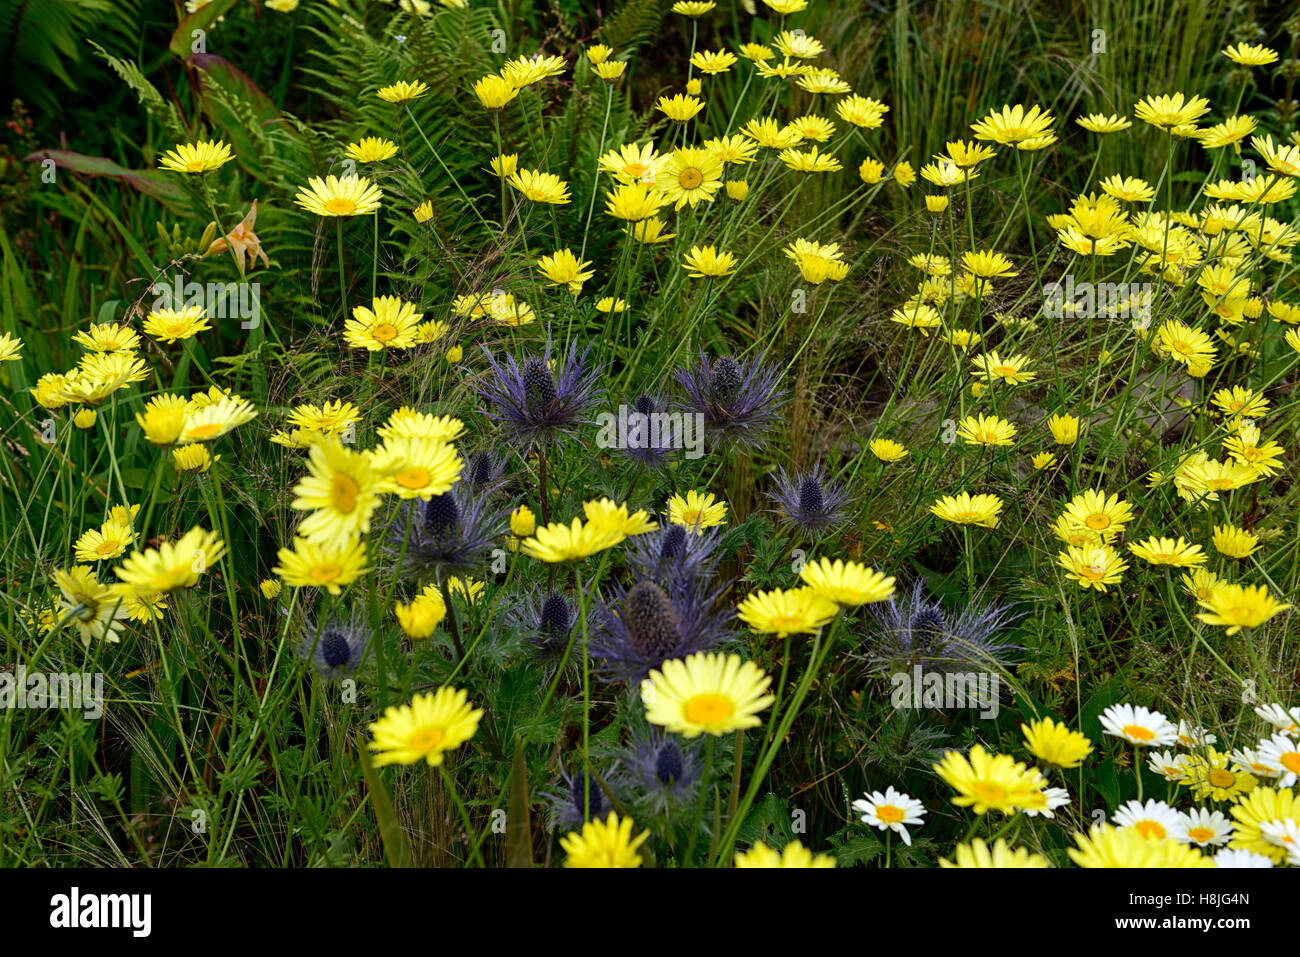 Eryngium Kamille blau gelbe Gänseblümchen Gänseblümchen Blumen Blüte Mischung gemischt Bepflanzung Schema Bett mehrjährige Kontrast RM Floral Stockfoto